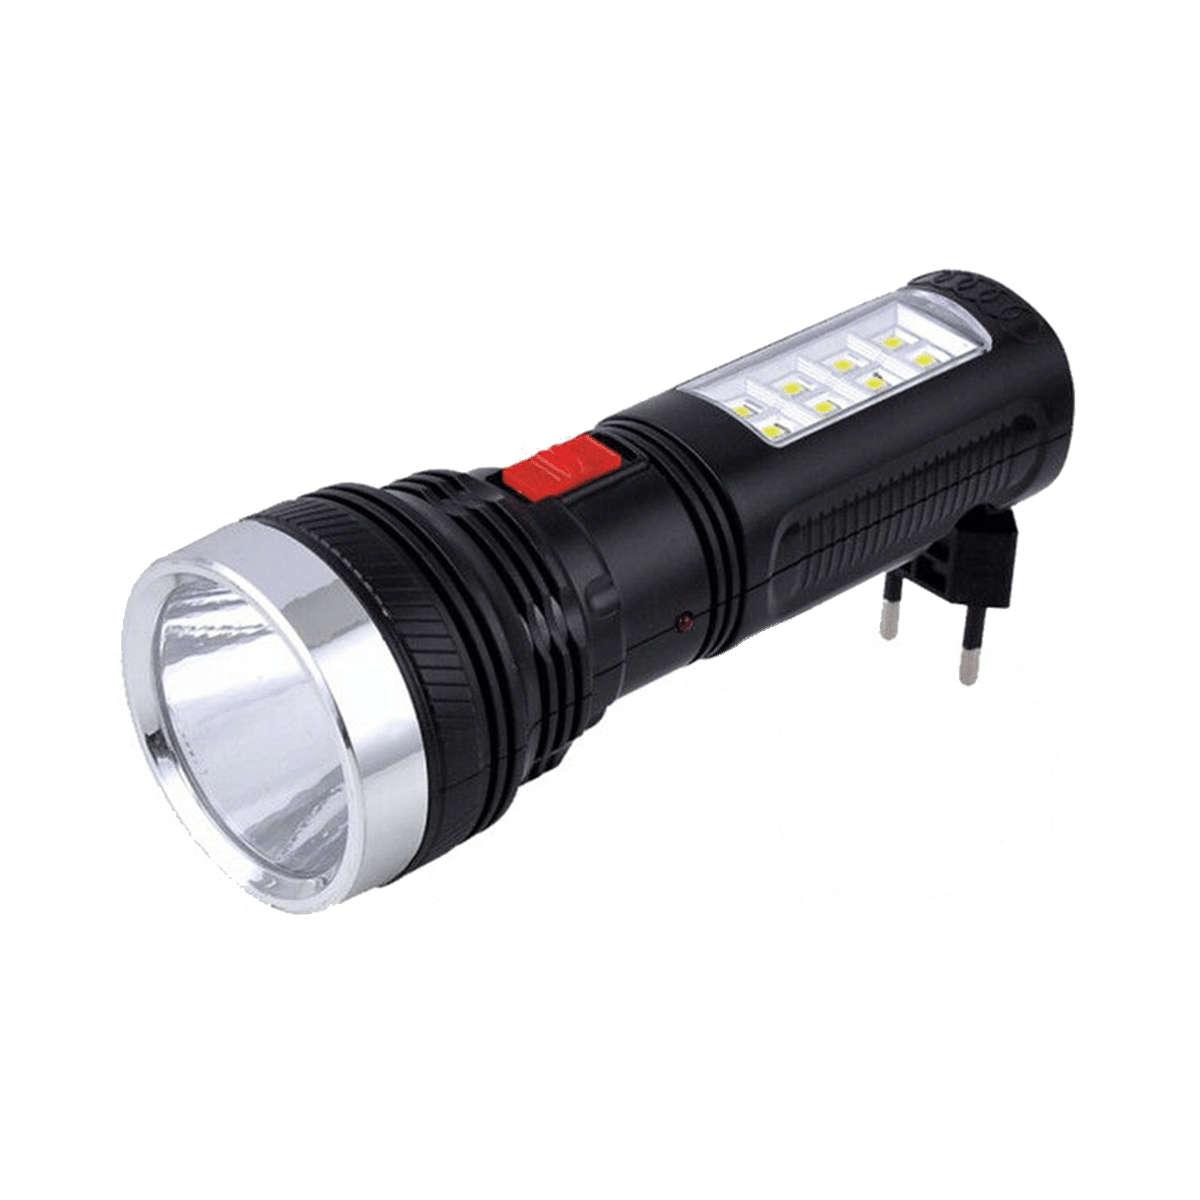 Ліхтарик YJ-227 акумуляторний, 16*5,5 см, 1 1W LED+8 Led